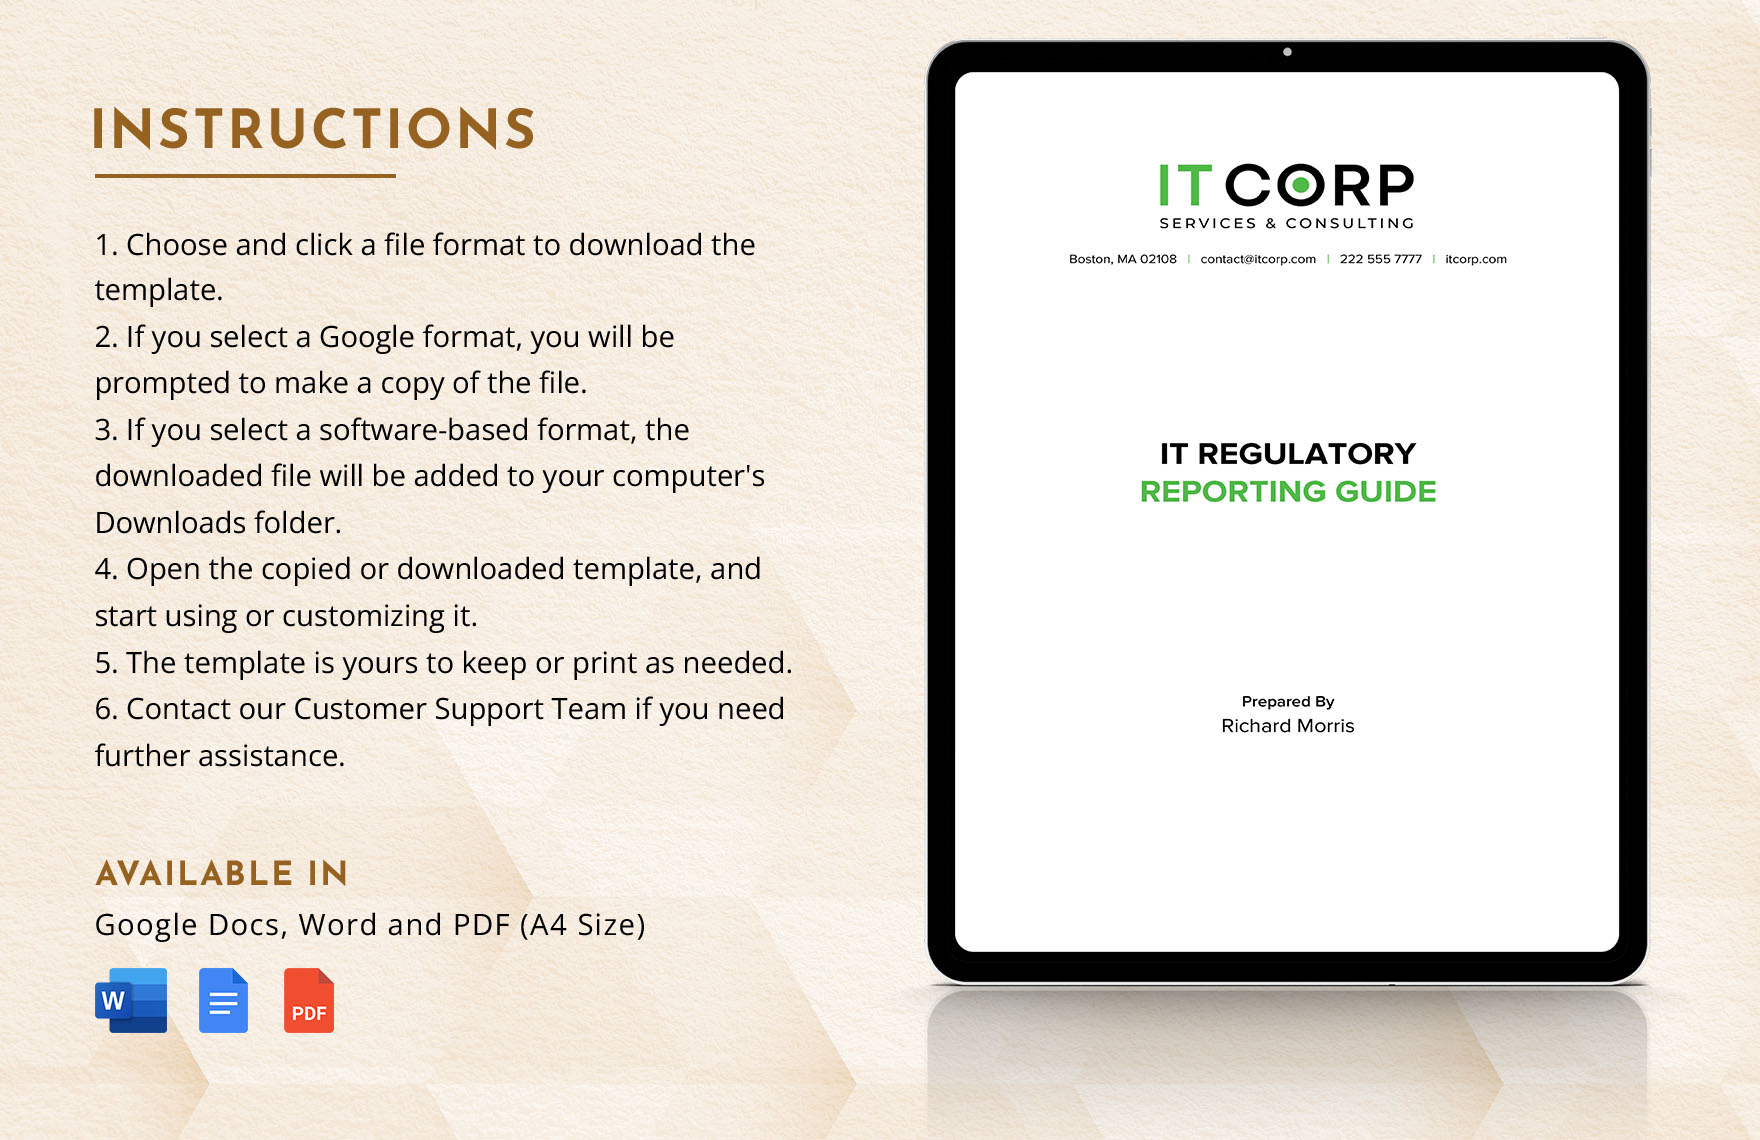 IT Regulatory Reporting Guide Template